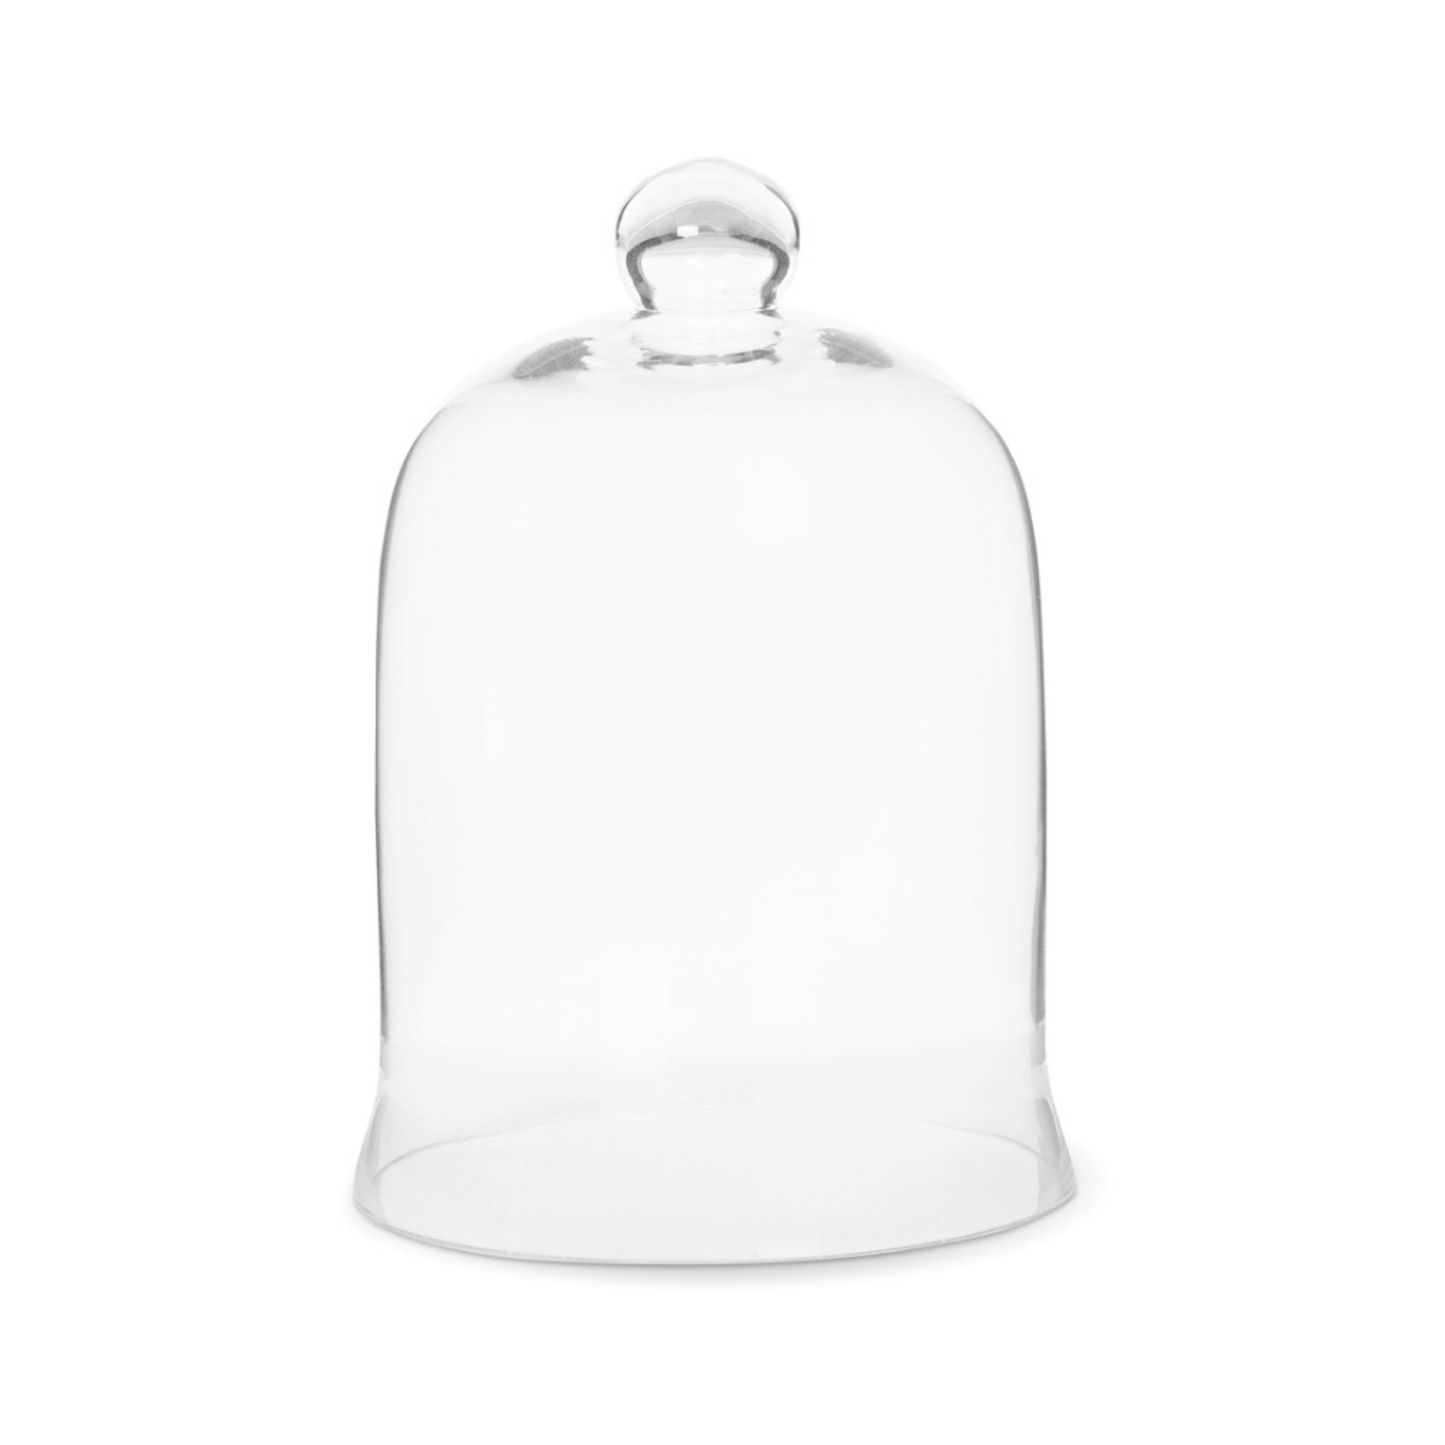 Glass Bell Jar